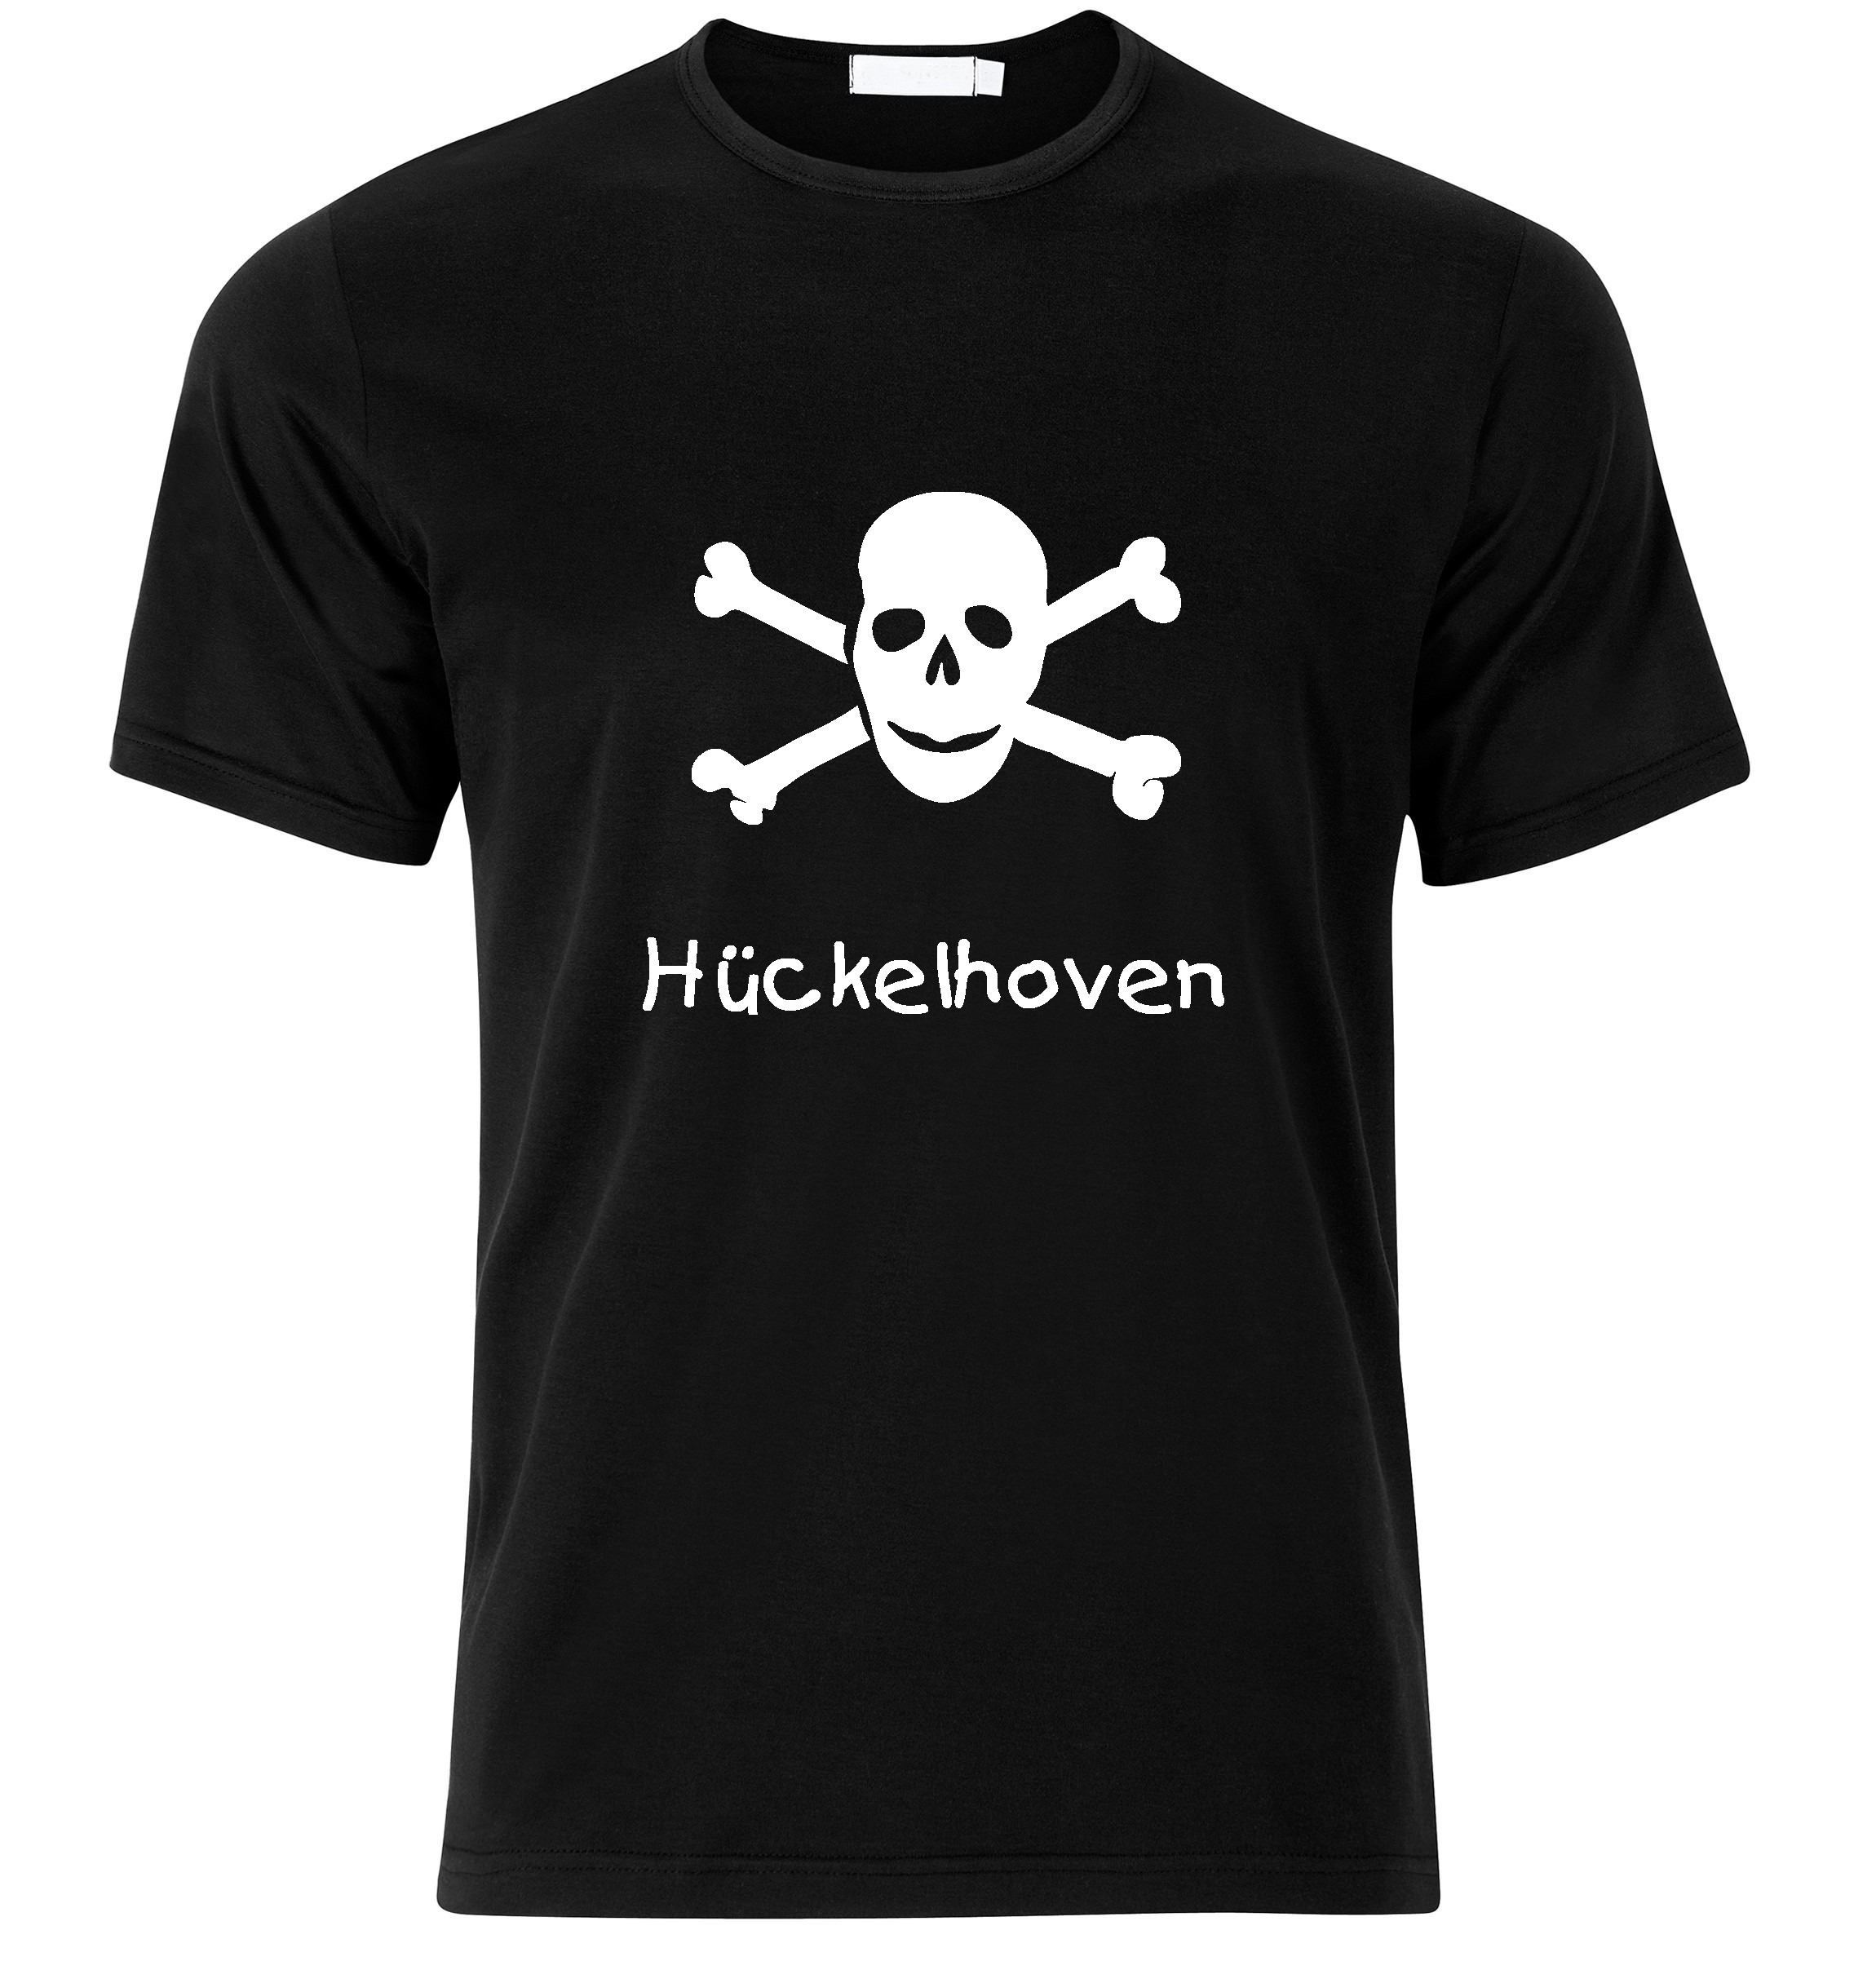 T-Shirt Hückelhoven Jolly Roger, Totenkopf